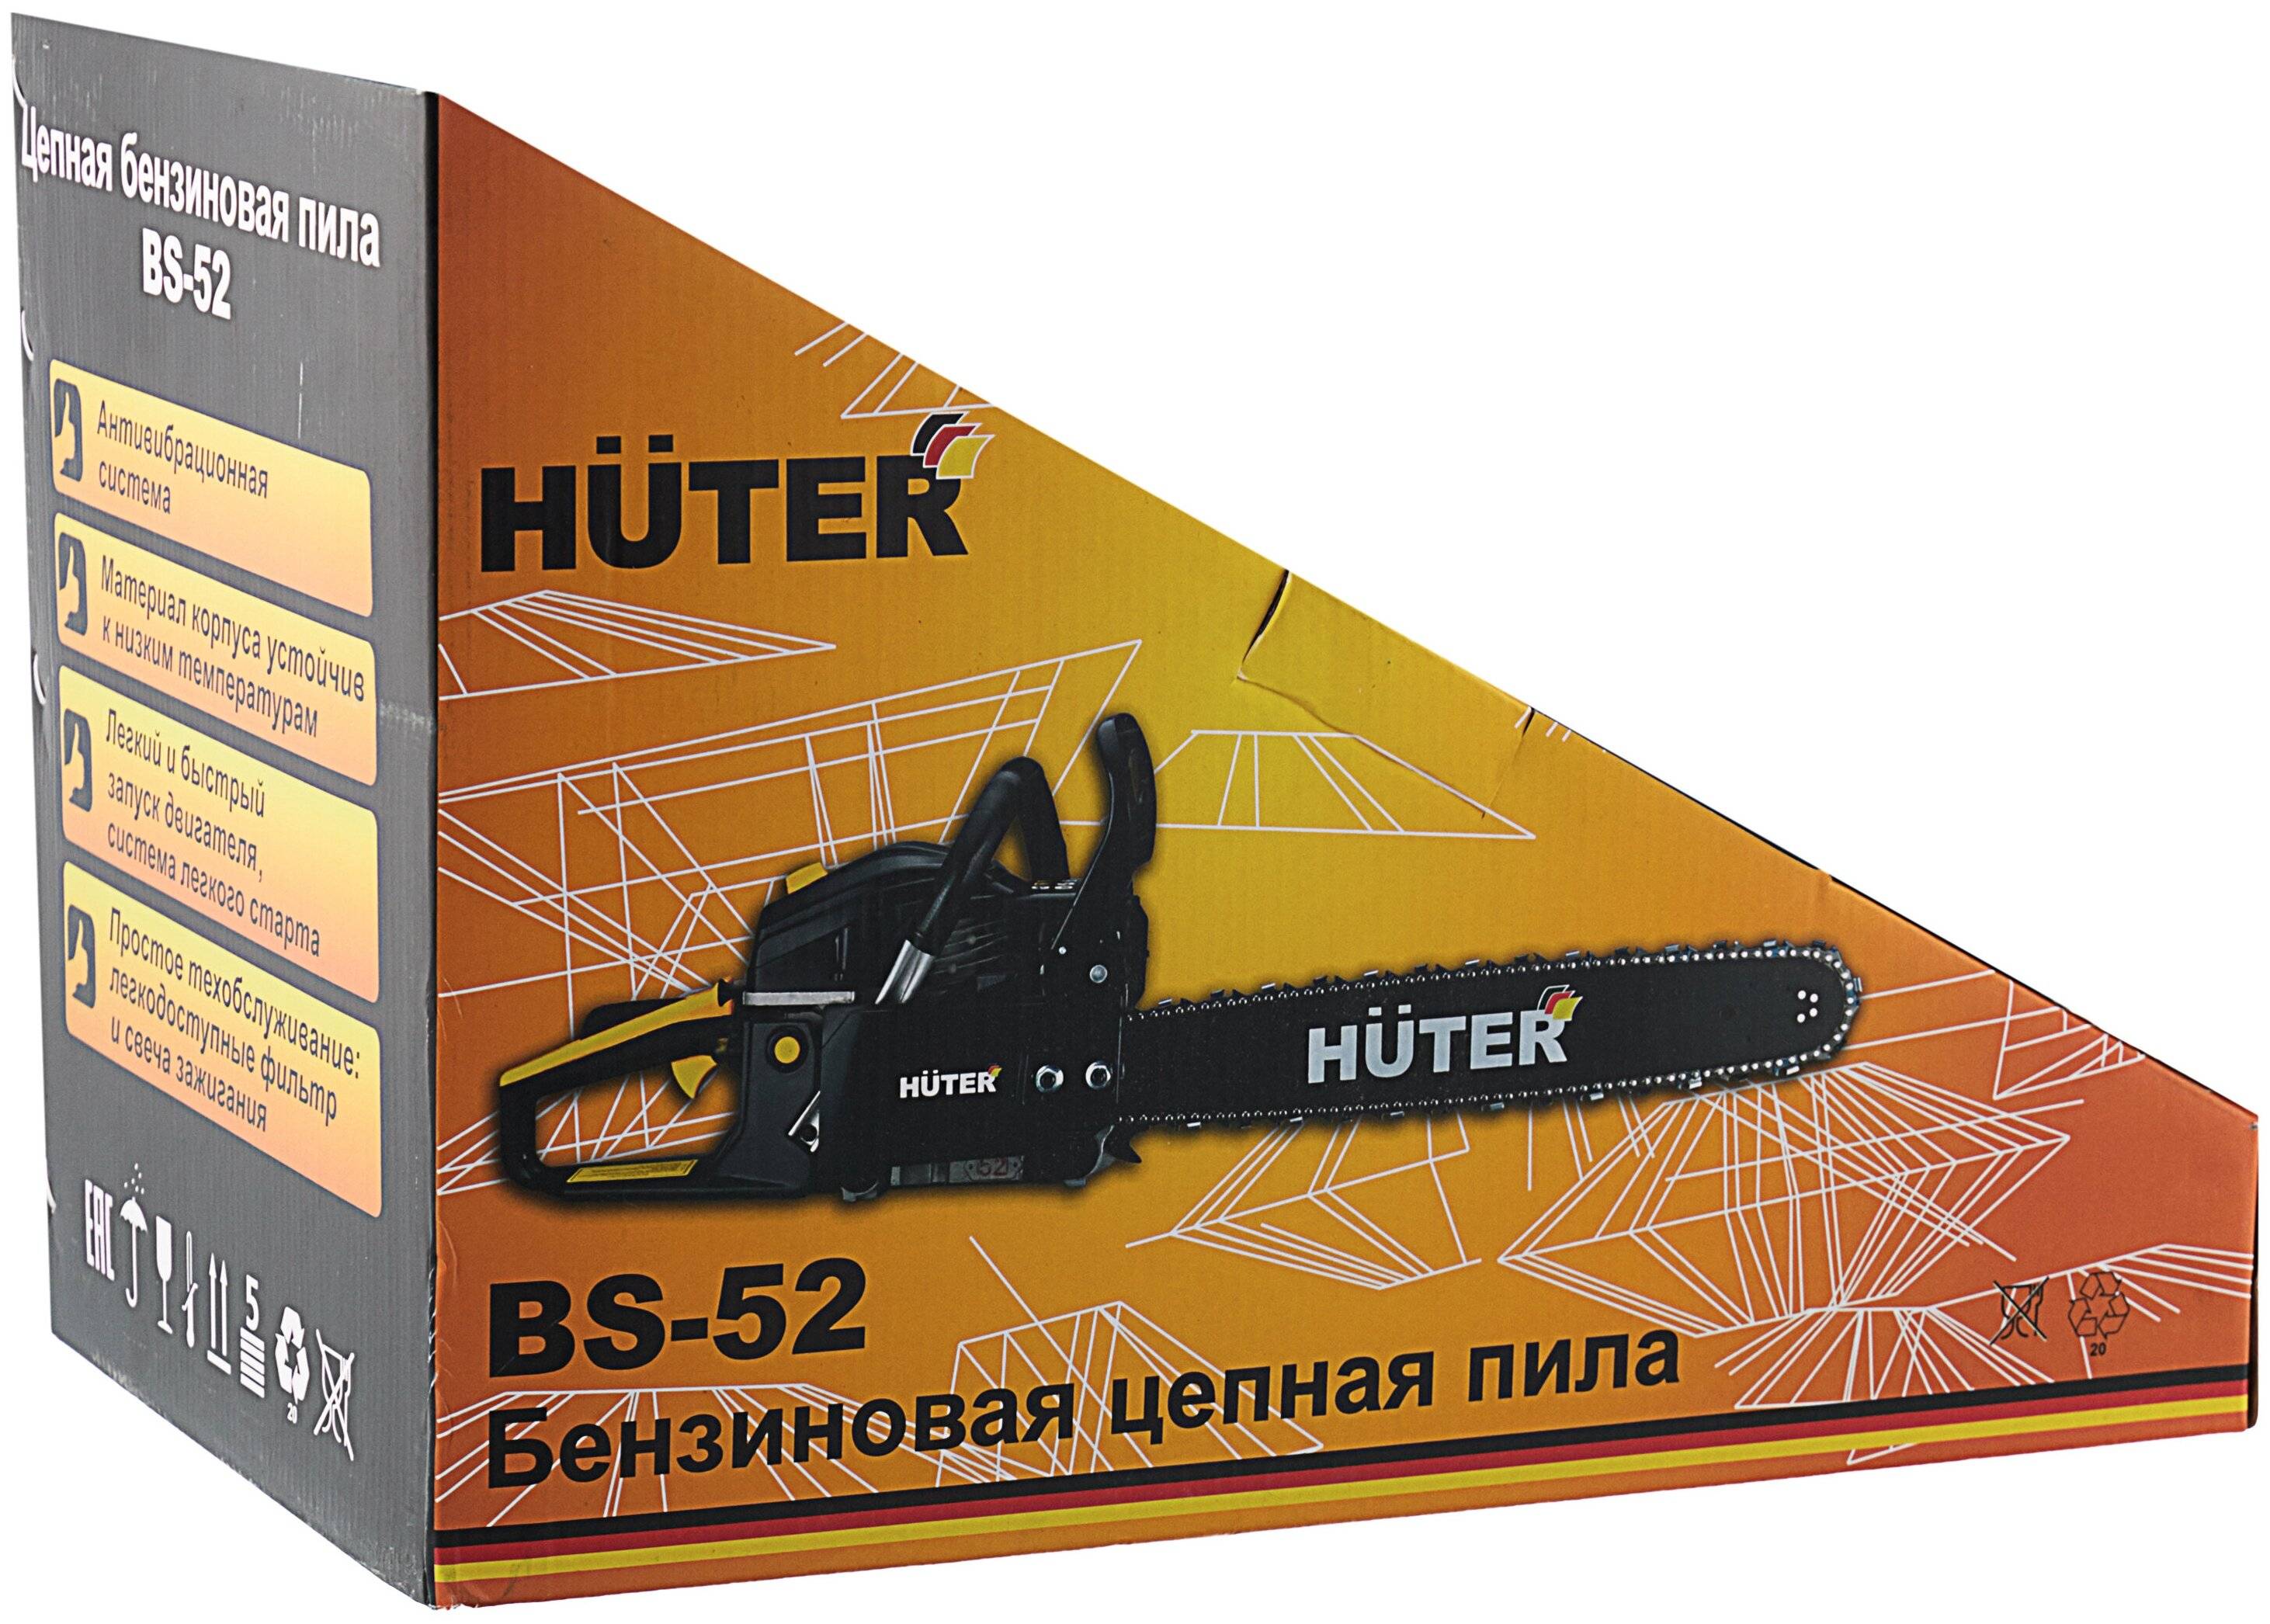 Американсая бензопила huter bs-52 — обзор, характеристики, отзывы владельцев, а также чем отличается bs-52m